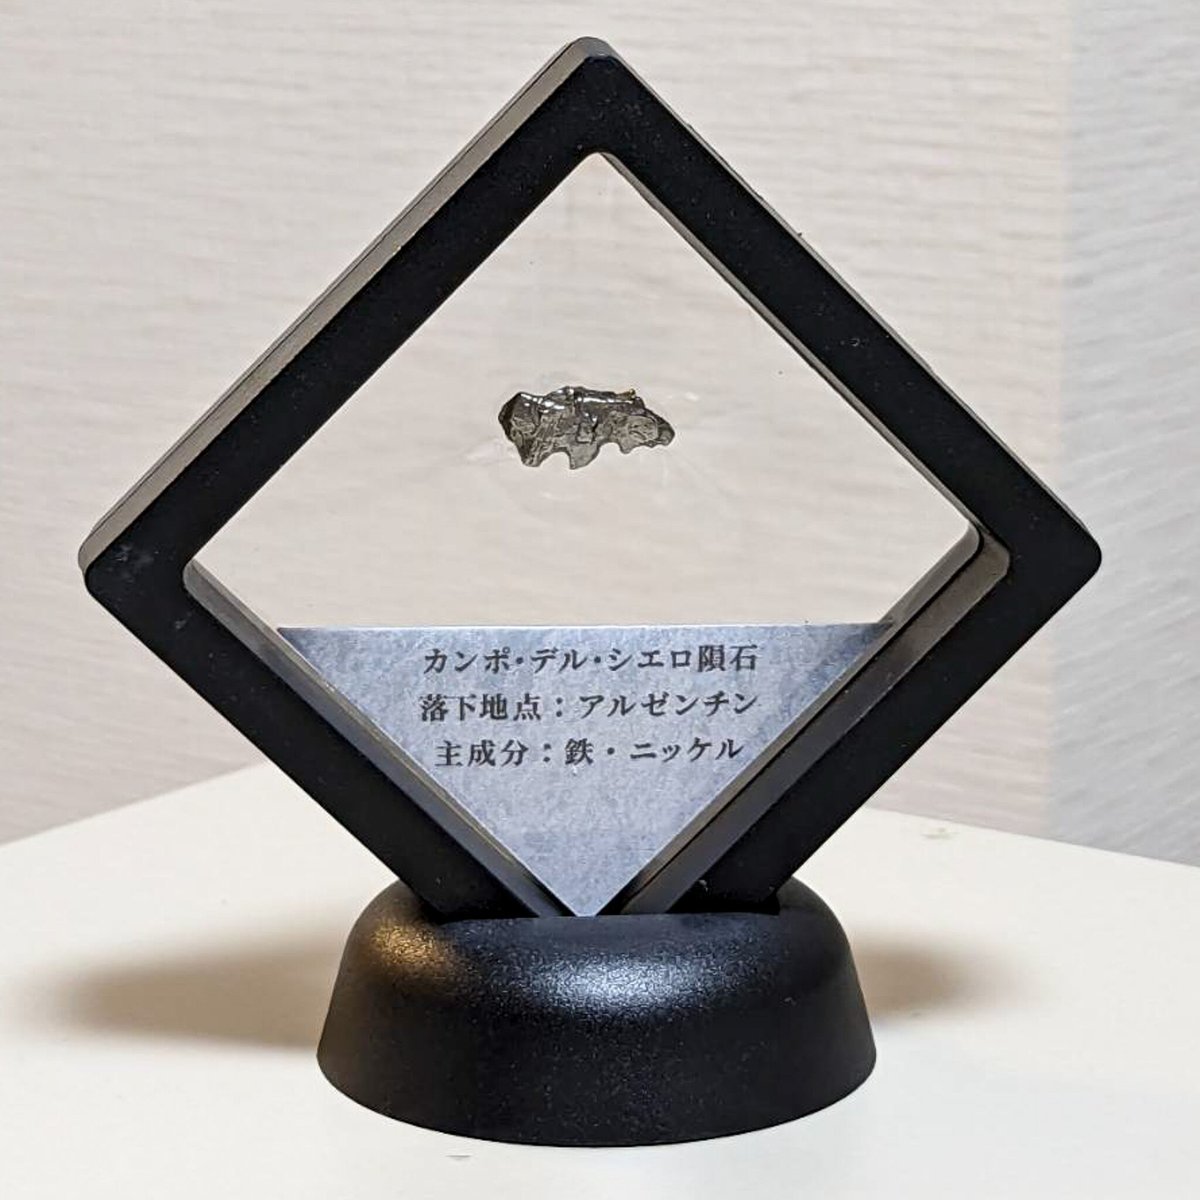 【隕石標本】カンポ･デル･シエロ隕石